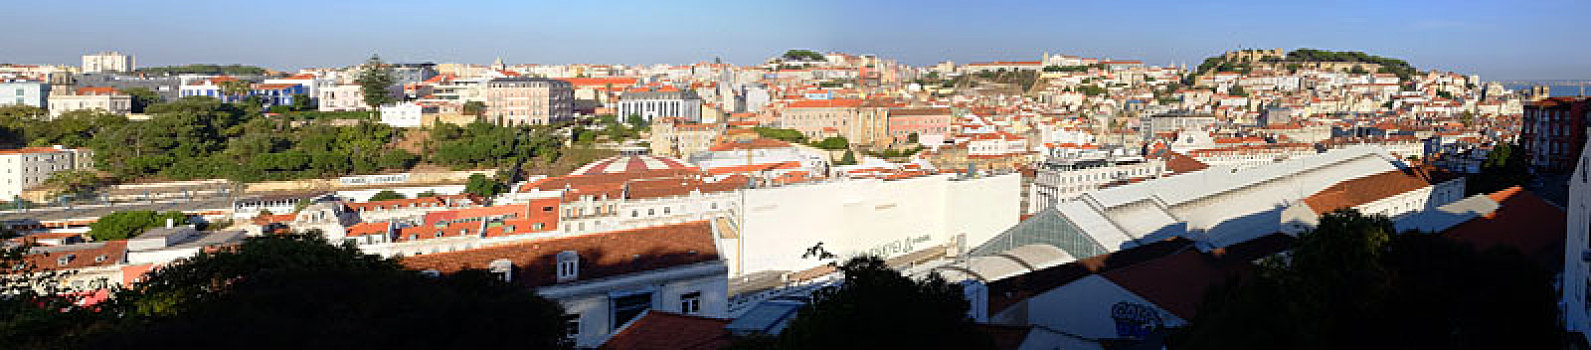 葡萄牙里斯本老城全景